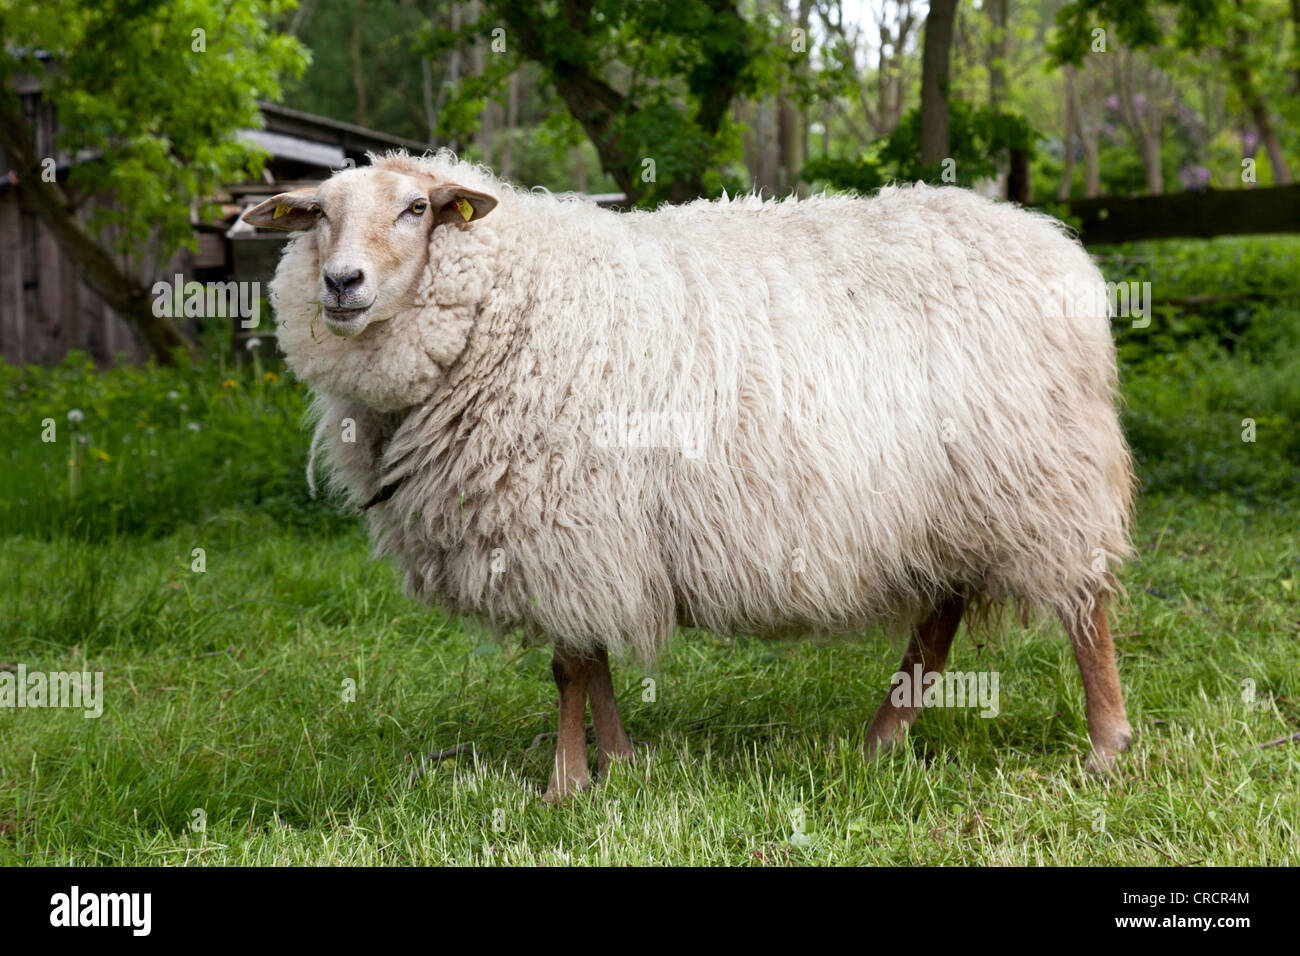 Großes Schaf, Wolle Schaf stehend auf einer grünen Wiese, Mecklenburg-Western Pomerania, Deutschland, Europa Stockfoto